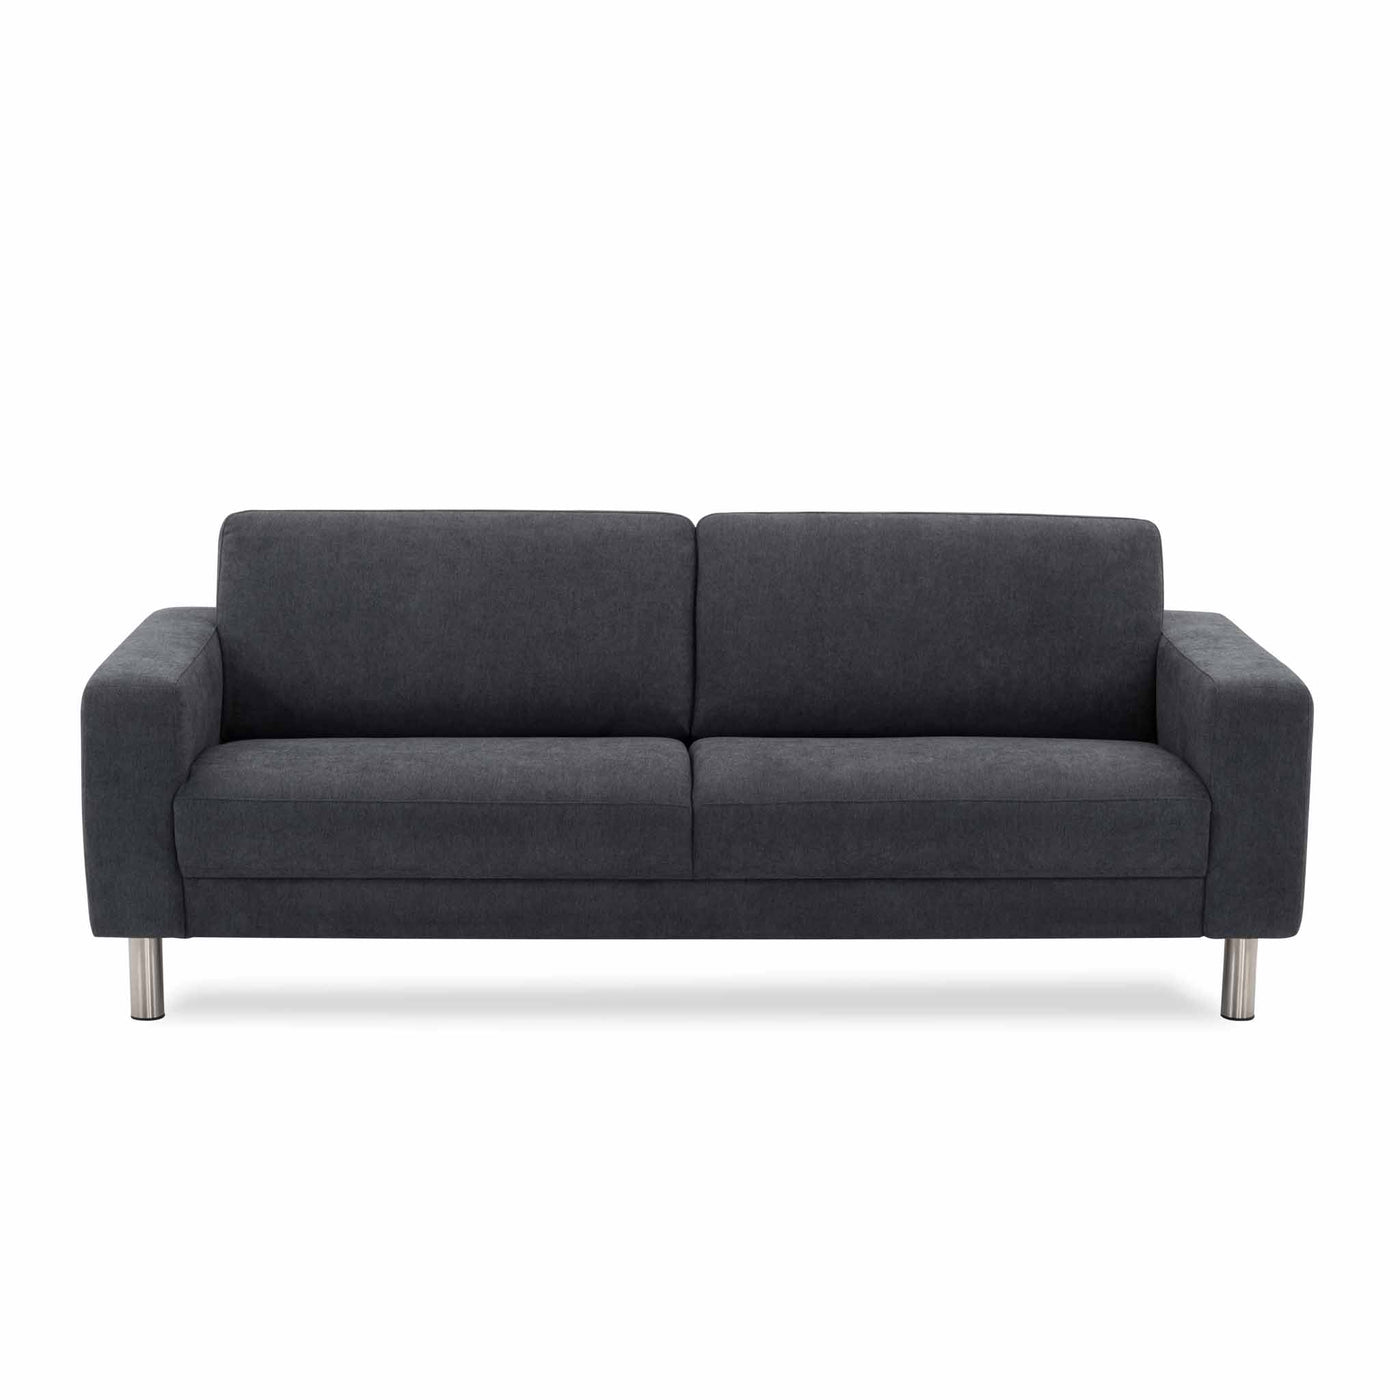 City 3-personers sofa i mørkegrå stof med ben i børstet stål fra Hjort Knudsen